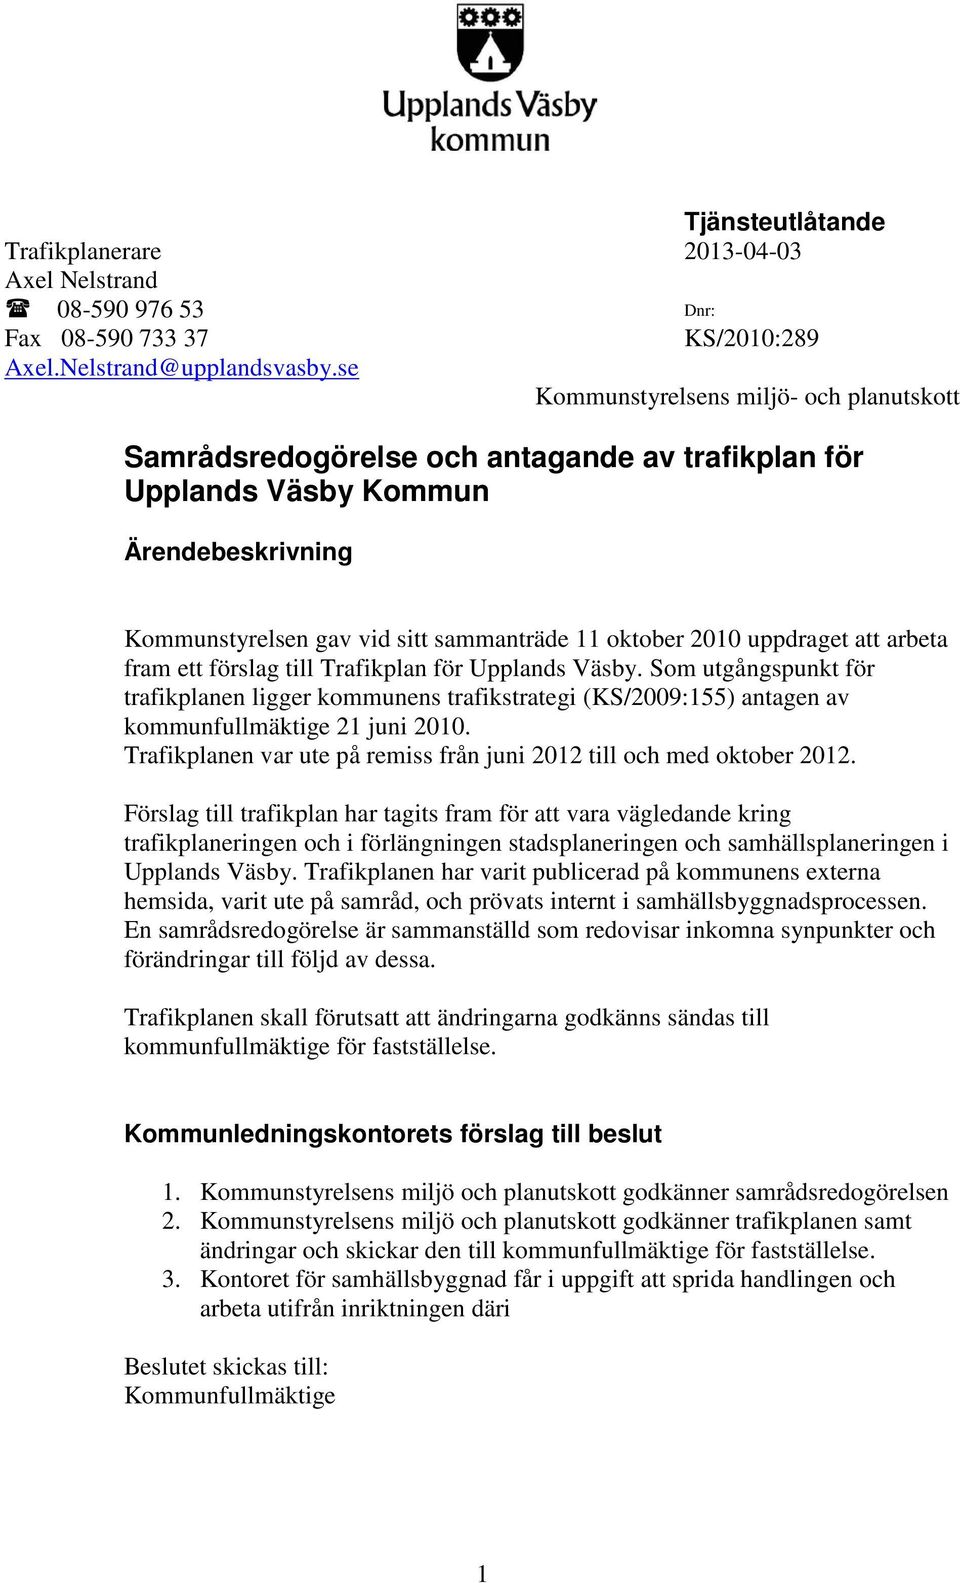 uppdraget att arbeta fram ett förslag till Trafikplan för Upplands Väsby. Som utgångspunkt för trafikplanen ligger kommunens trafikstrategi (KS/2009:155) antagen av kommunfullmäktige 21 juni 2010.